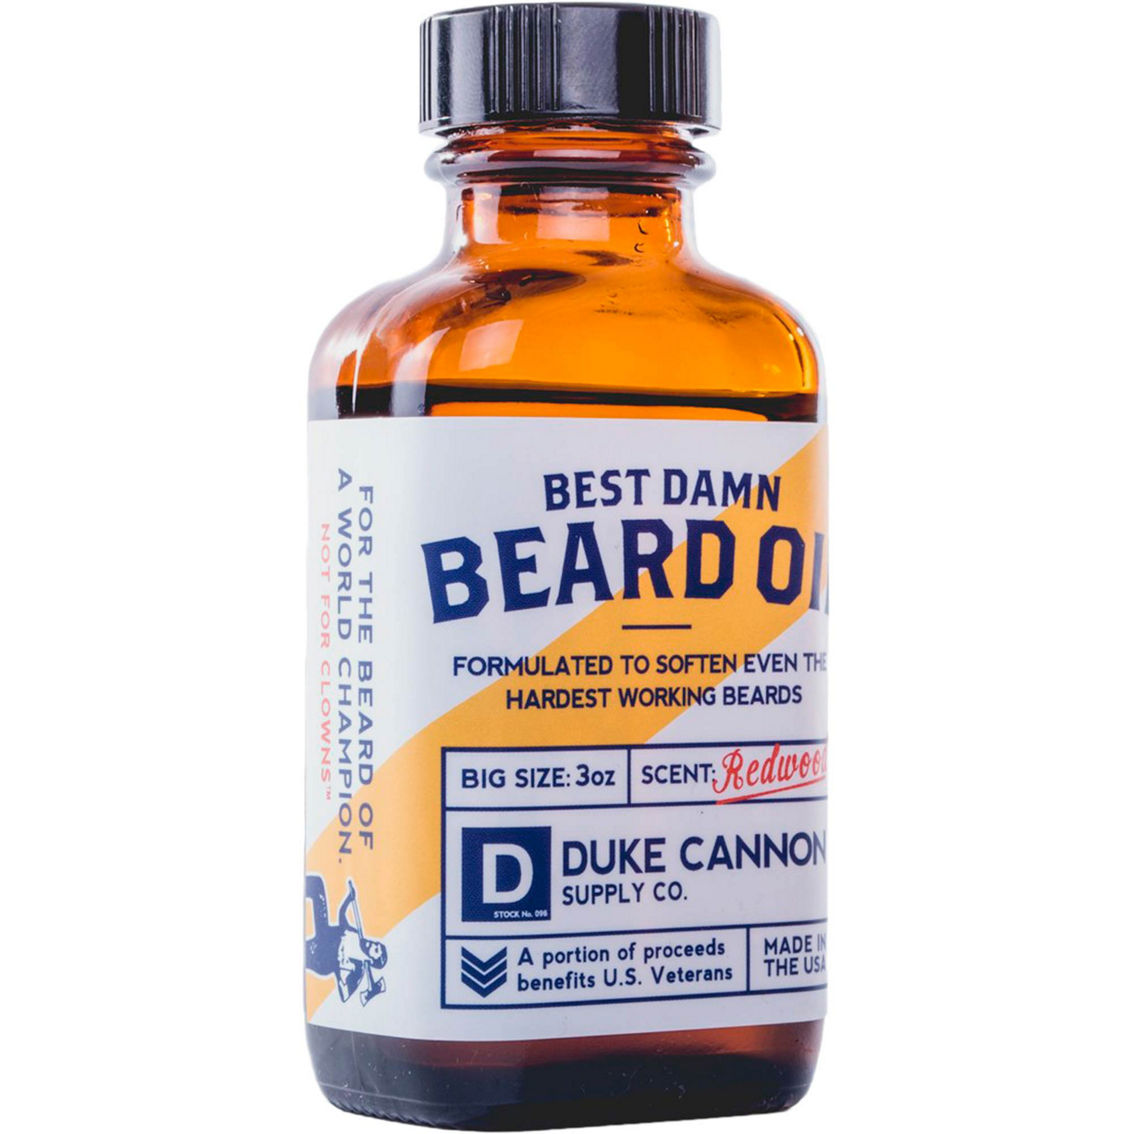 Duke Cannon Best Damn Beard Oil 3 oz. - Image 2 of 2